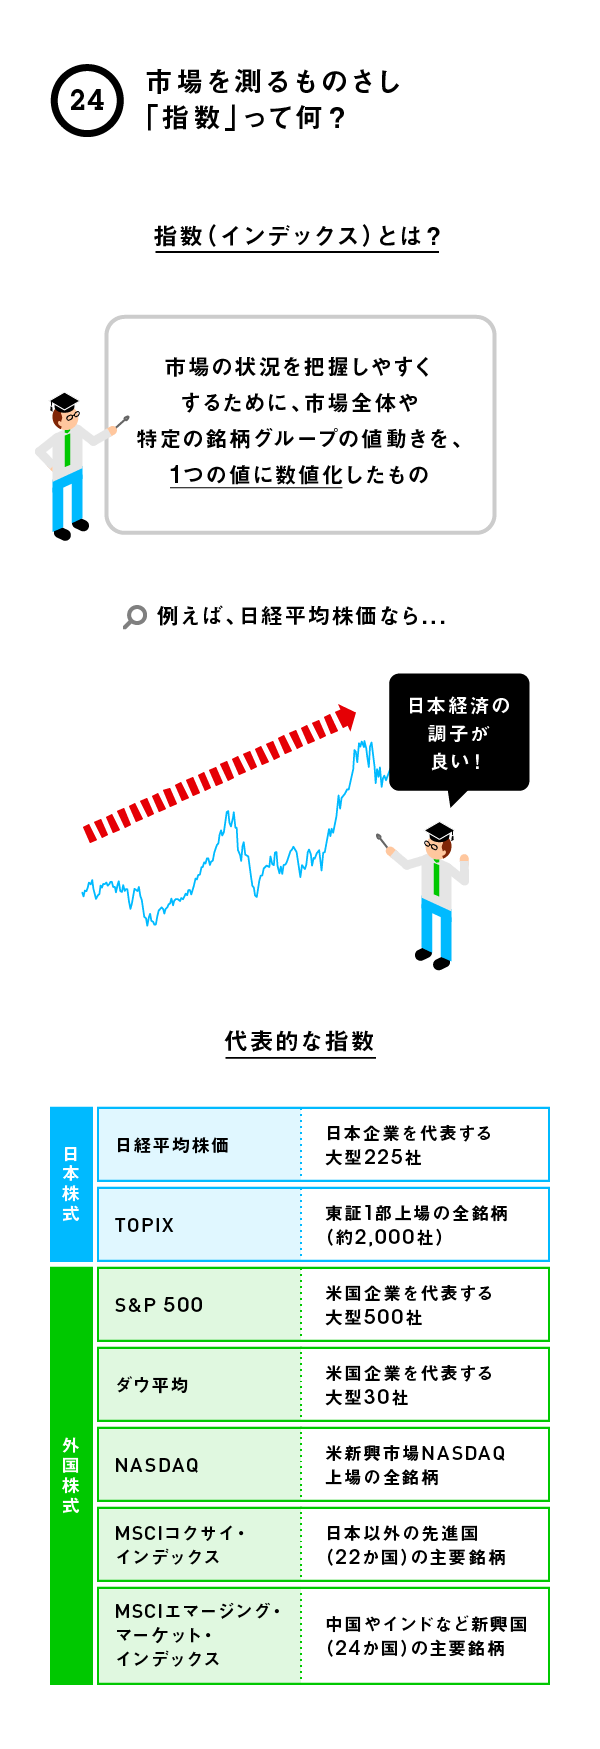 株価 一覧 東証